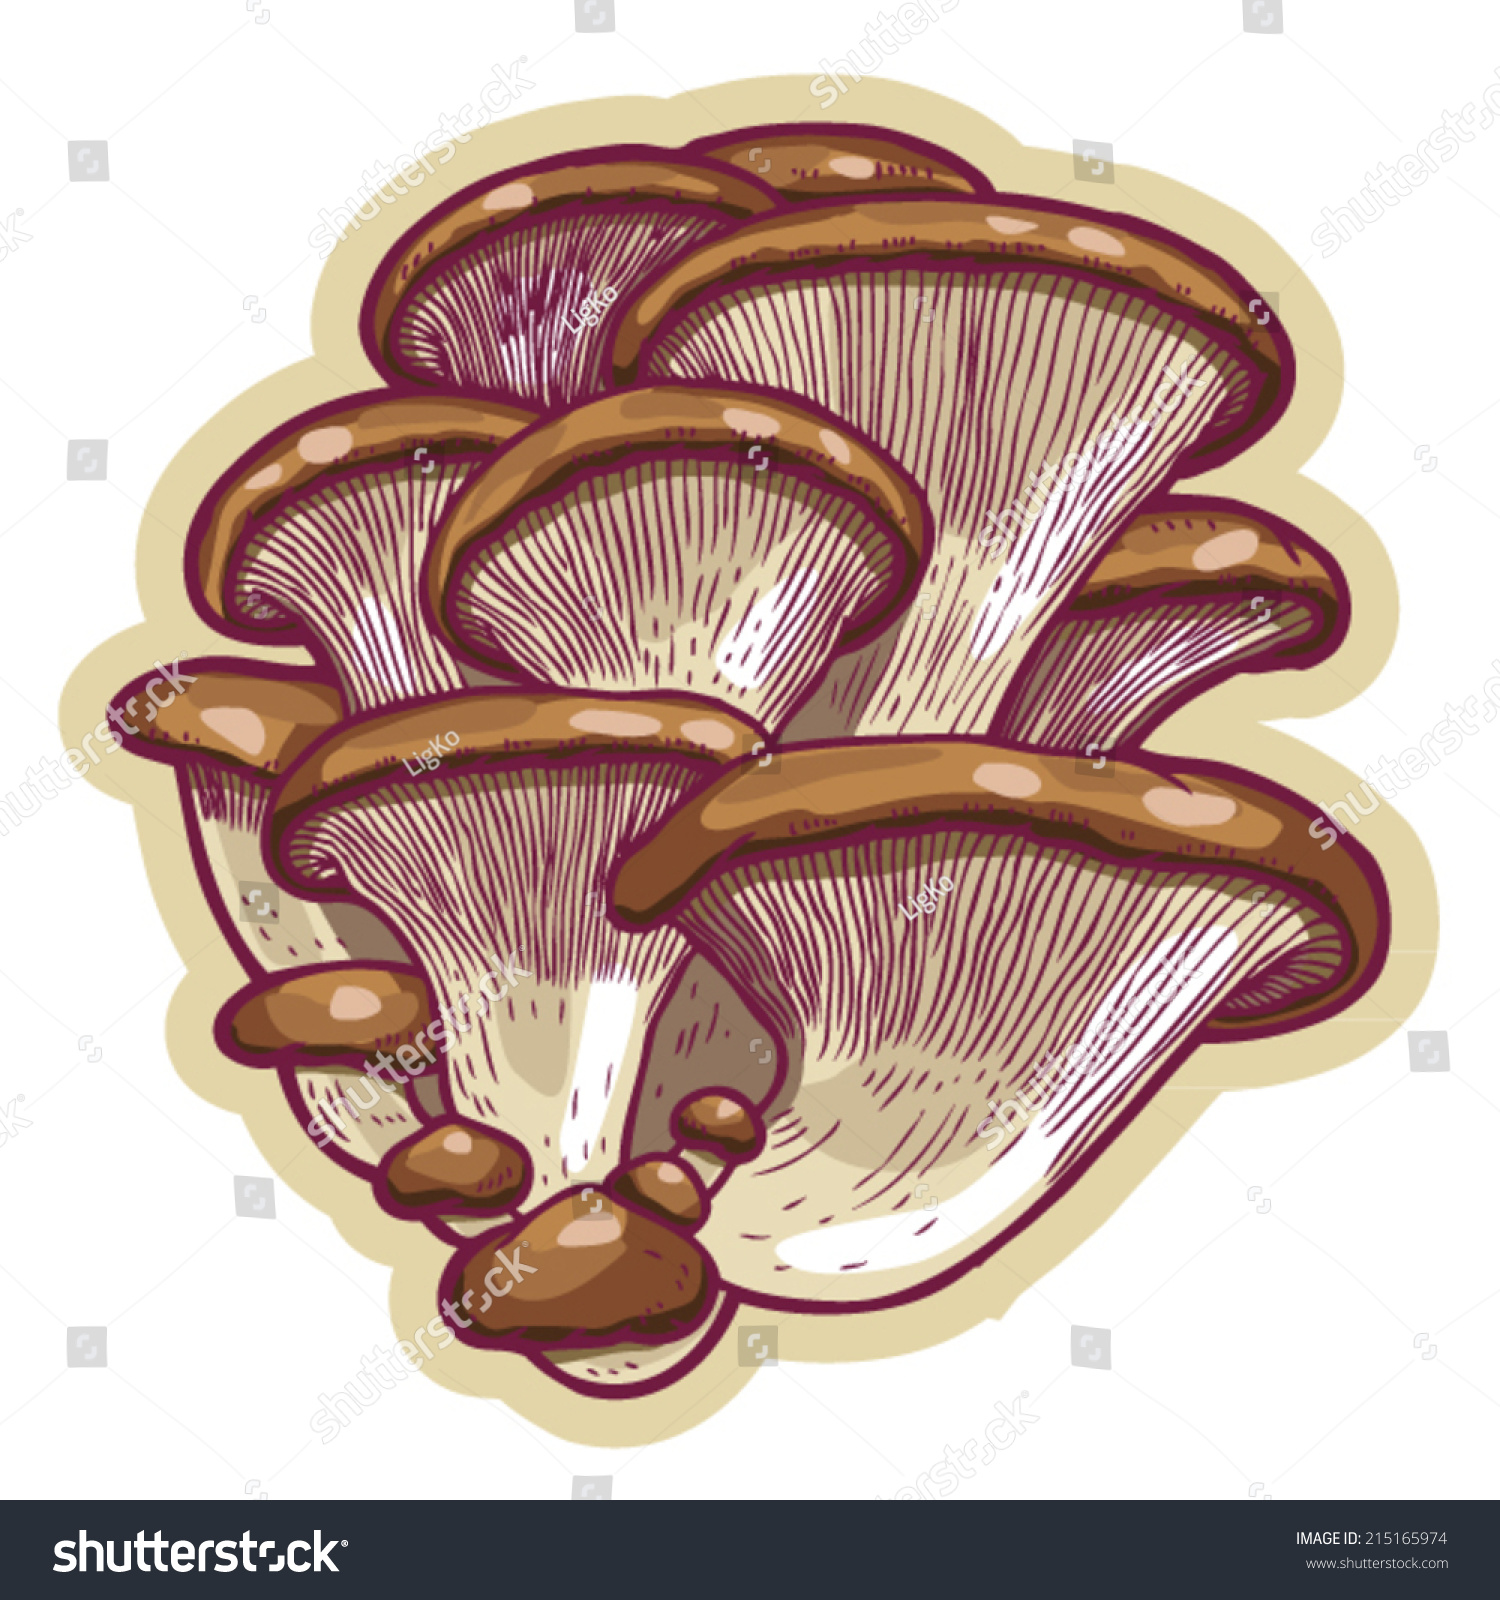 oyster mushroom clip art - photo #6